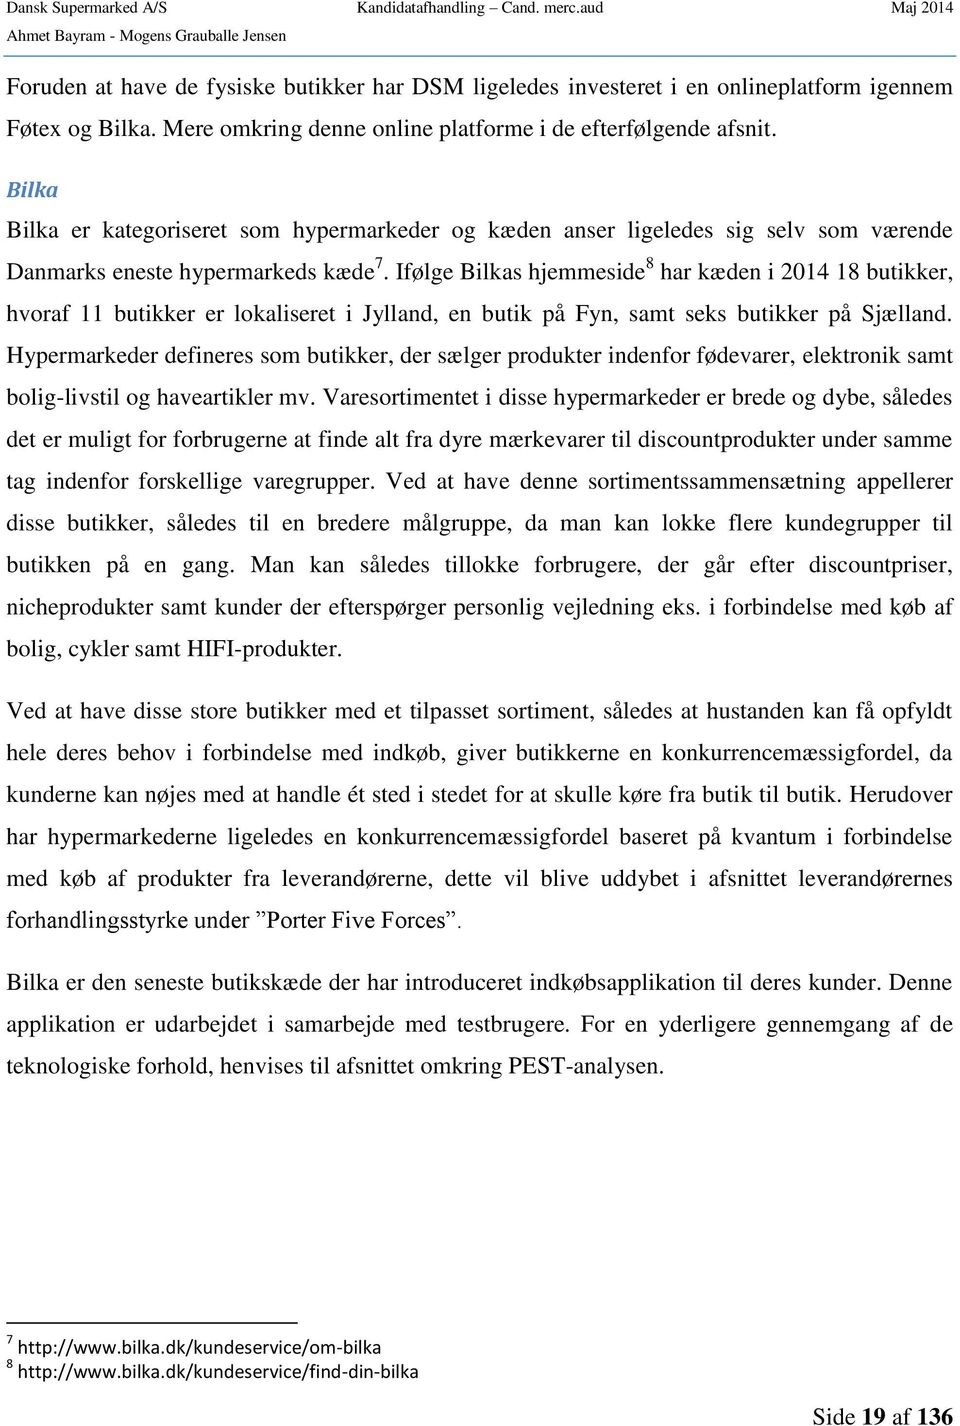 o Strategisk analyse og værdiansættelse af Dansk Supermarked - PDF ...